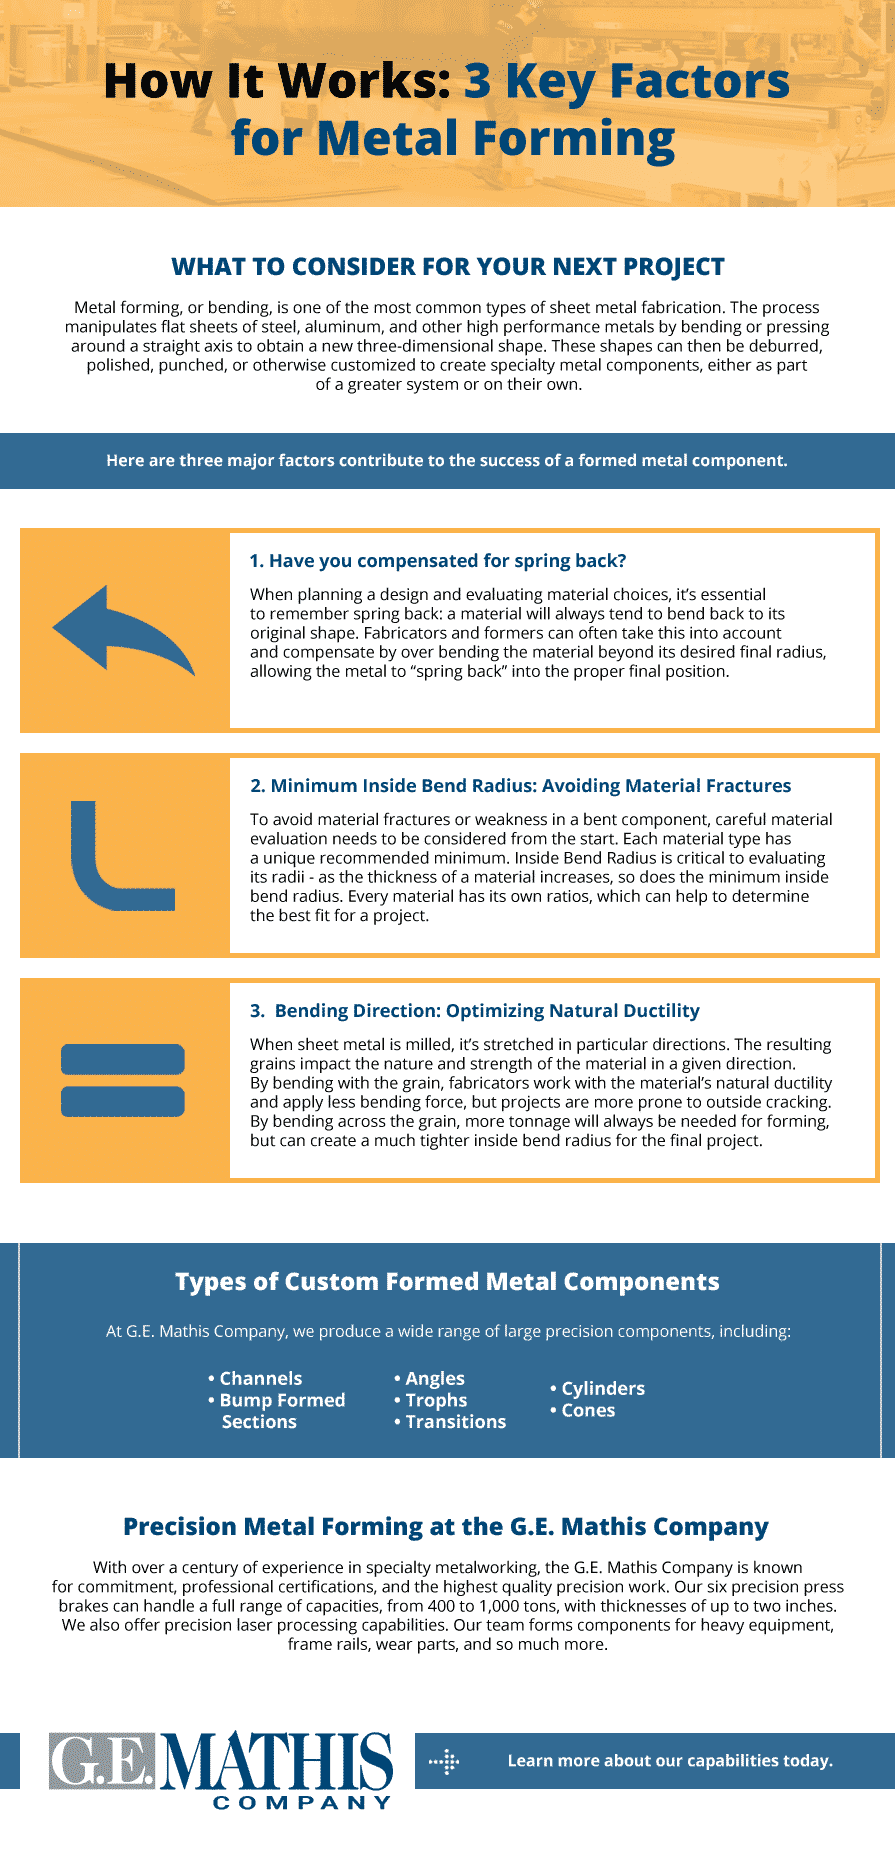 Key Factors for Metal Forming